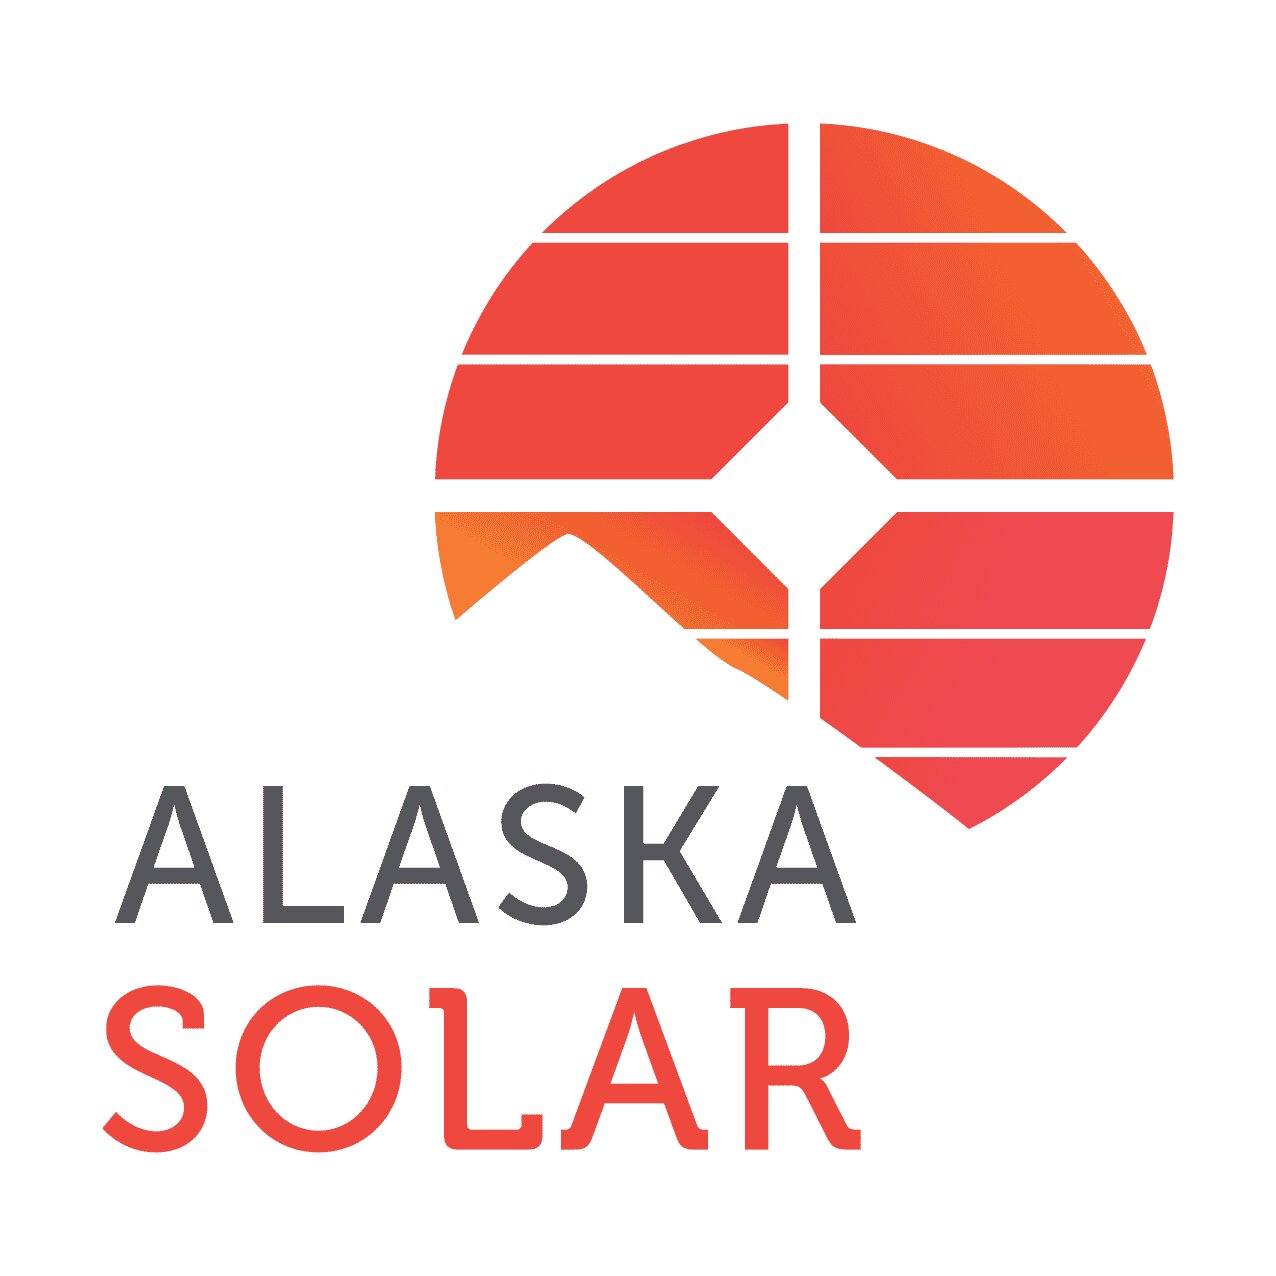 Alaska Solar reviews